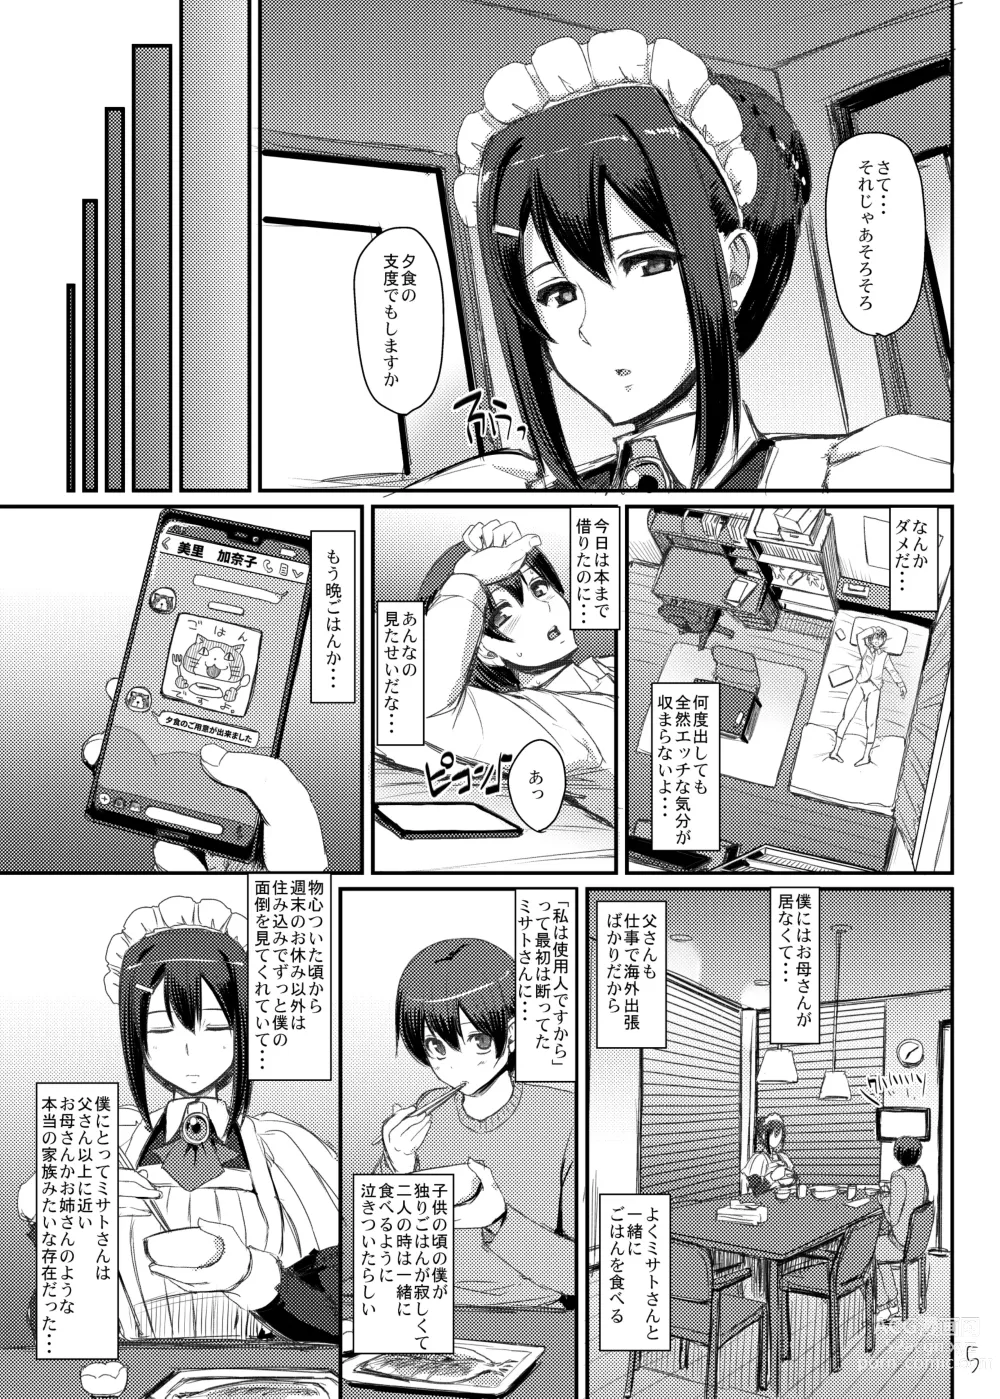 Page 6 of doujinshi Maid no Oshigoto.